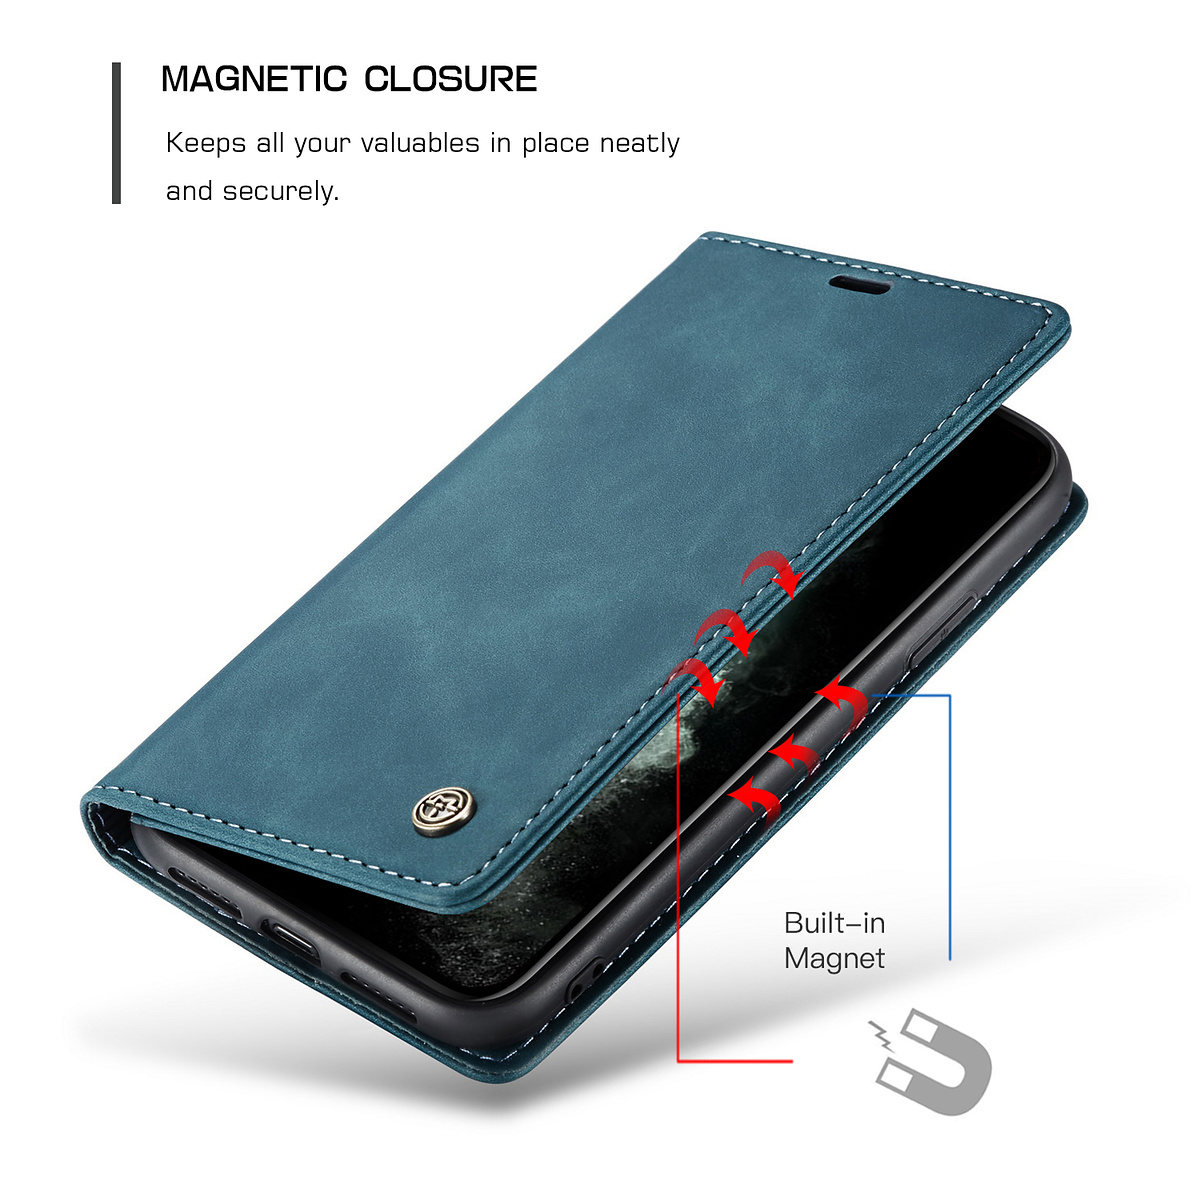 CaseMe plånboksfodral till iPhone 11 Pro, blå